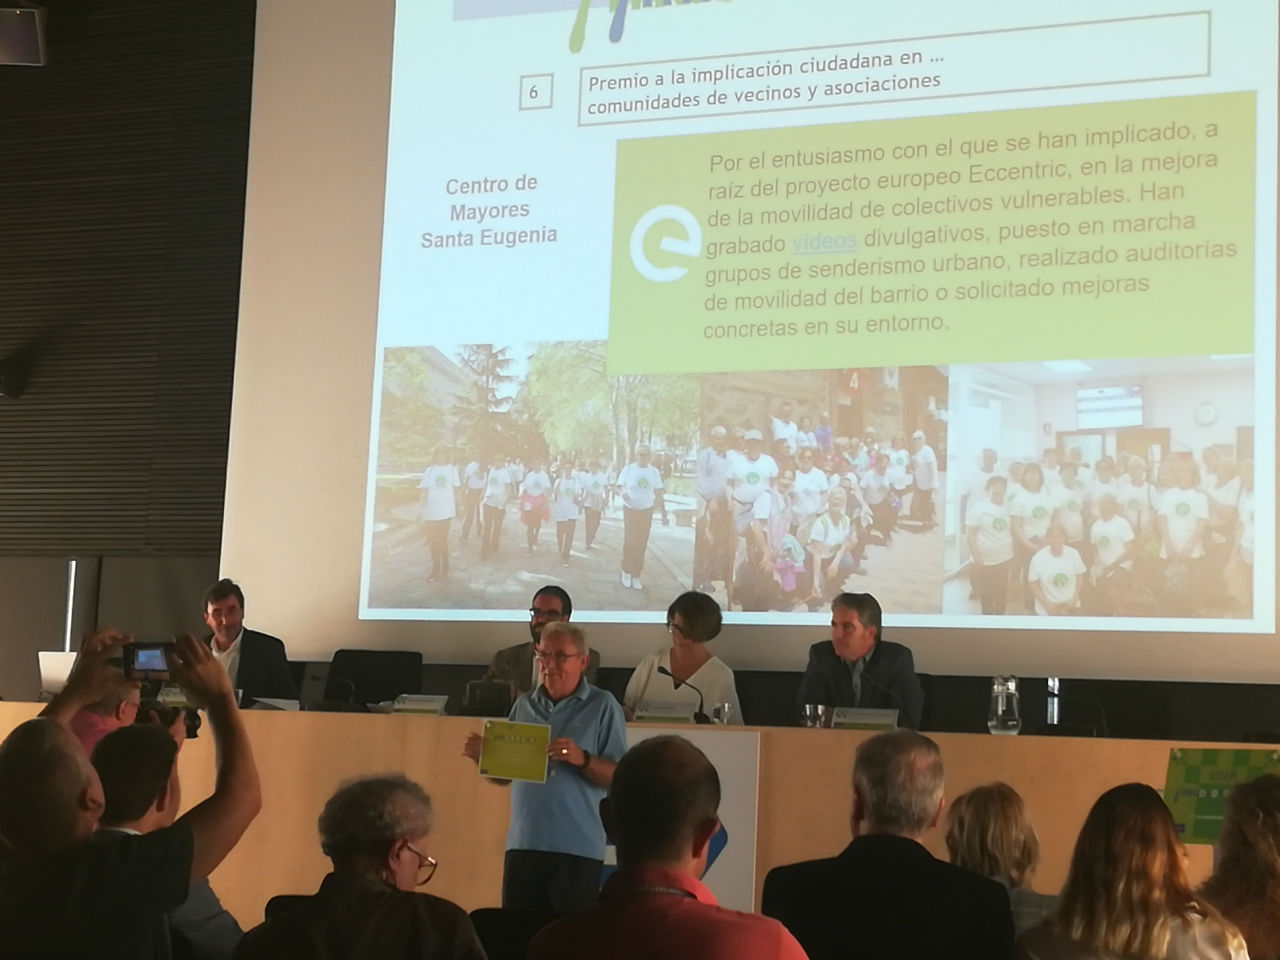 Premio «Muévete En Verde» a la implicación ciudadana en Villa de Vallecas